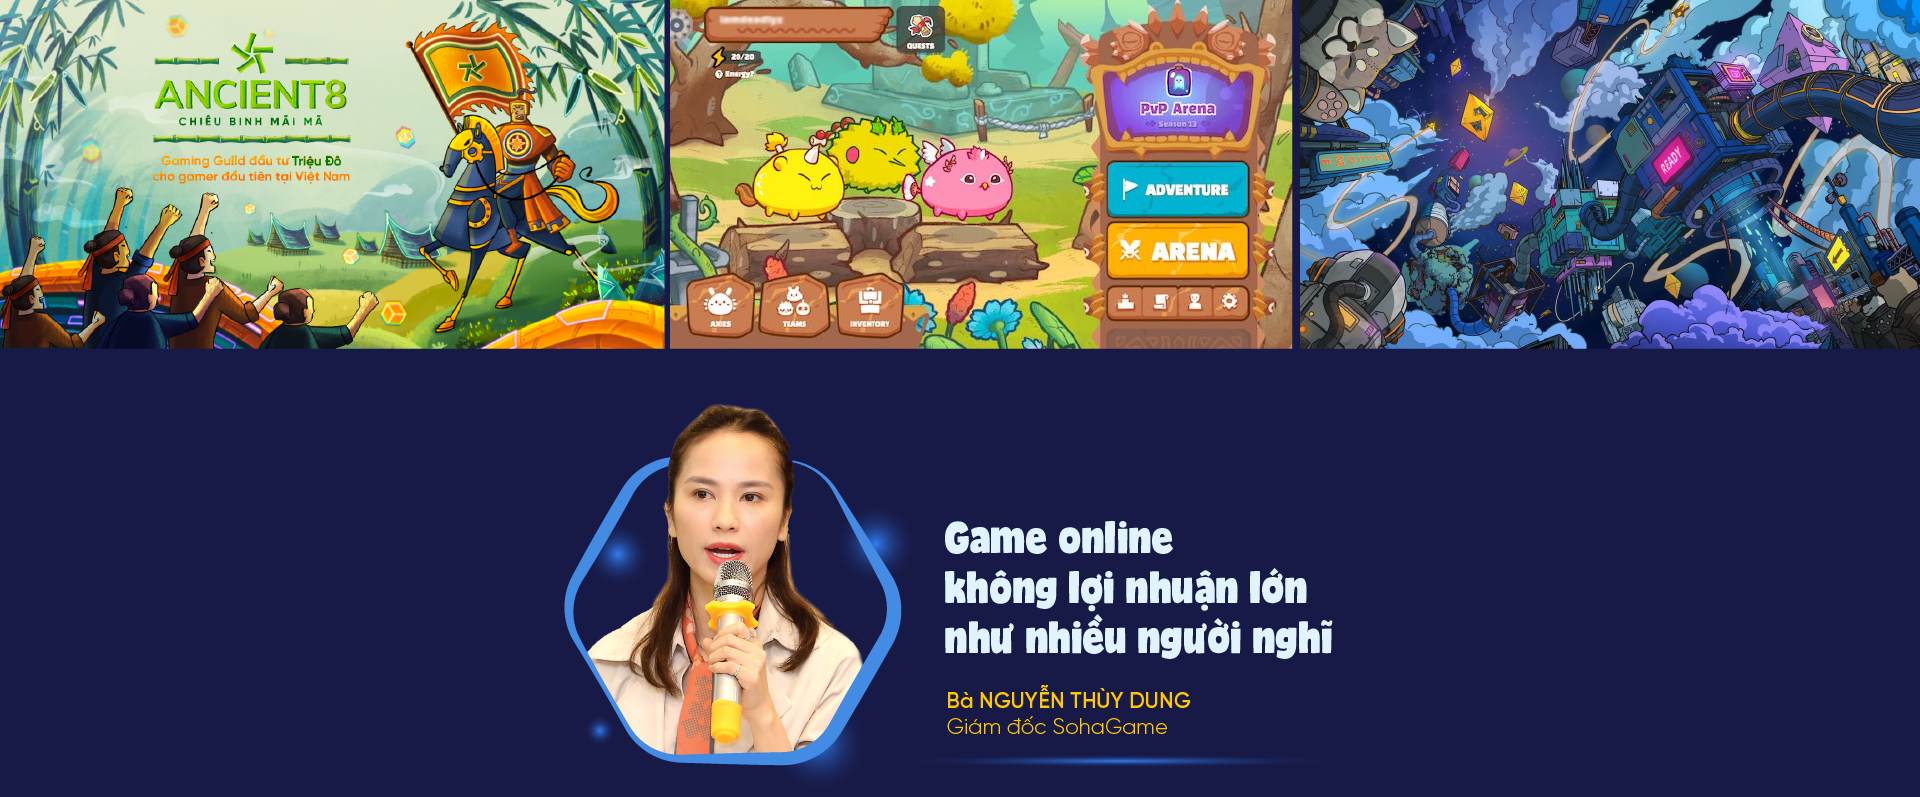 Chiến lược phát triển ngành game Việt: Góc nhìn người trong cuộc - Ảnh 7